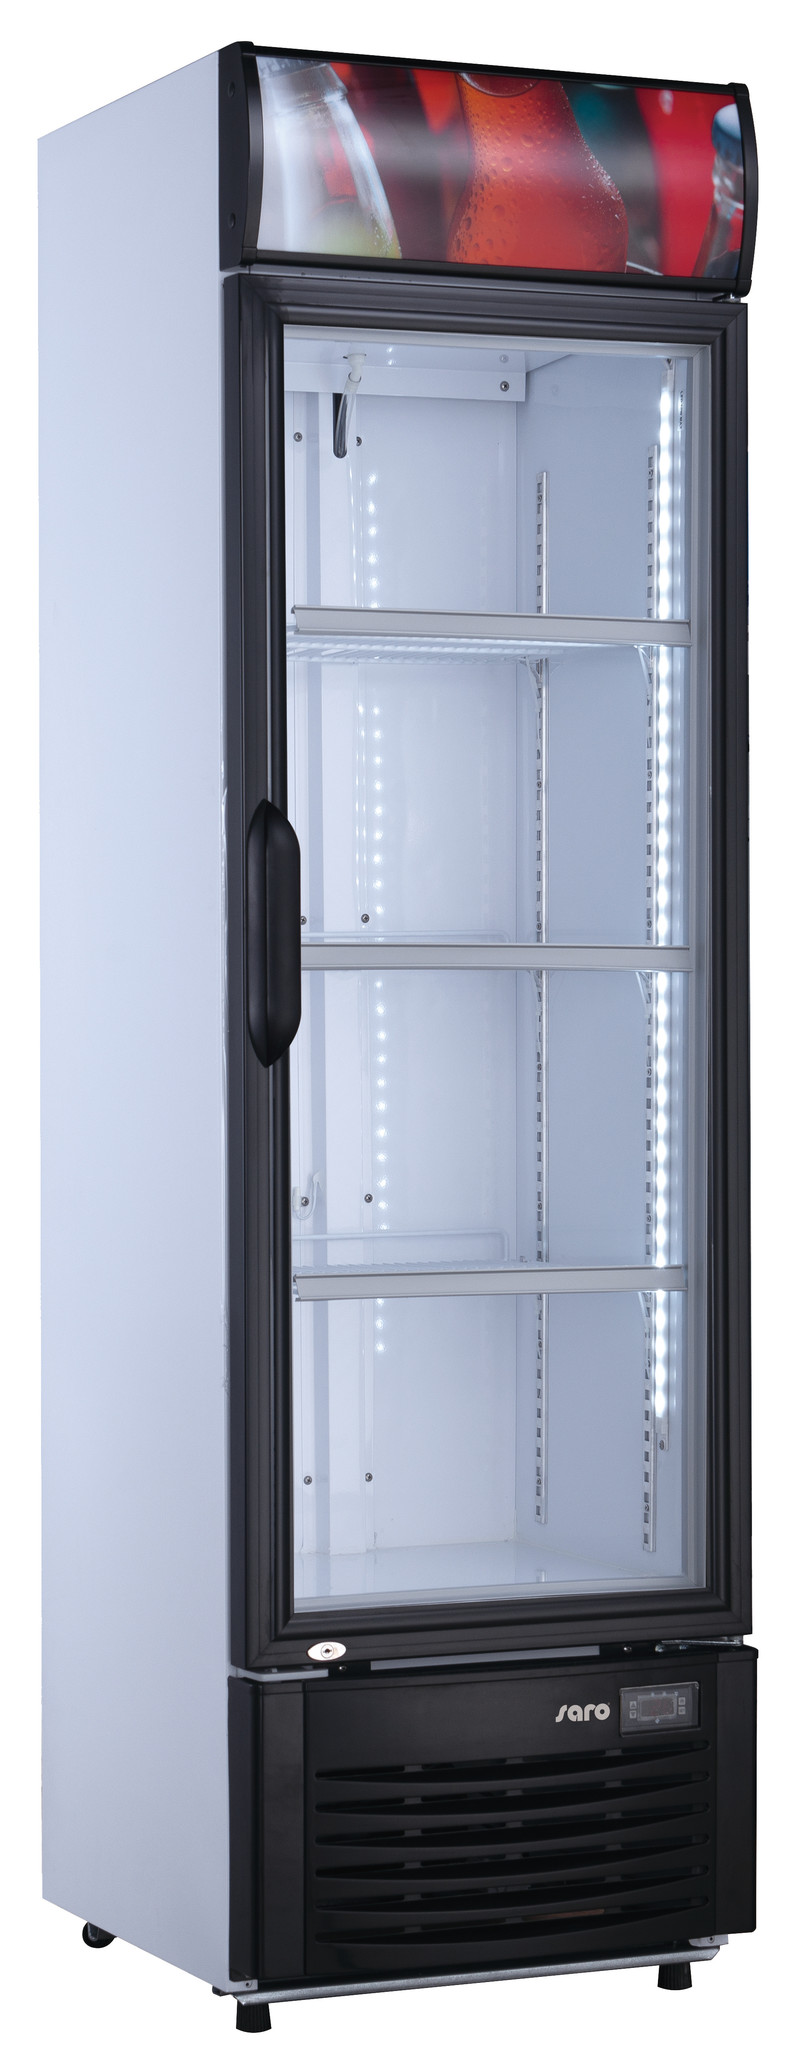 Refroidisseur de Bouteille  |Avec porte en verre| Éclairage led | 282 litres | 530x590x (H) 1845mm